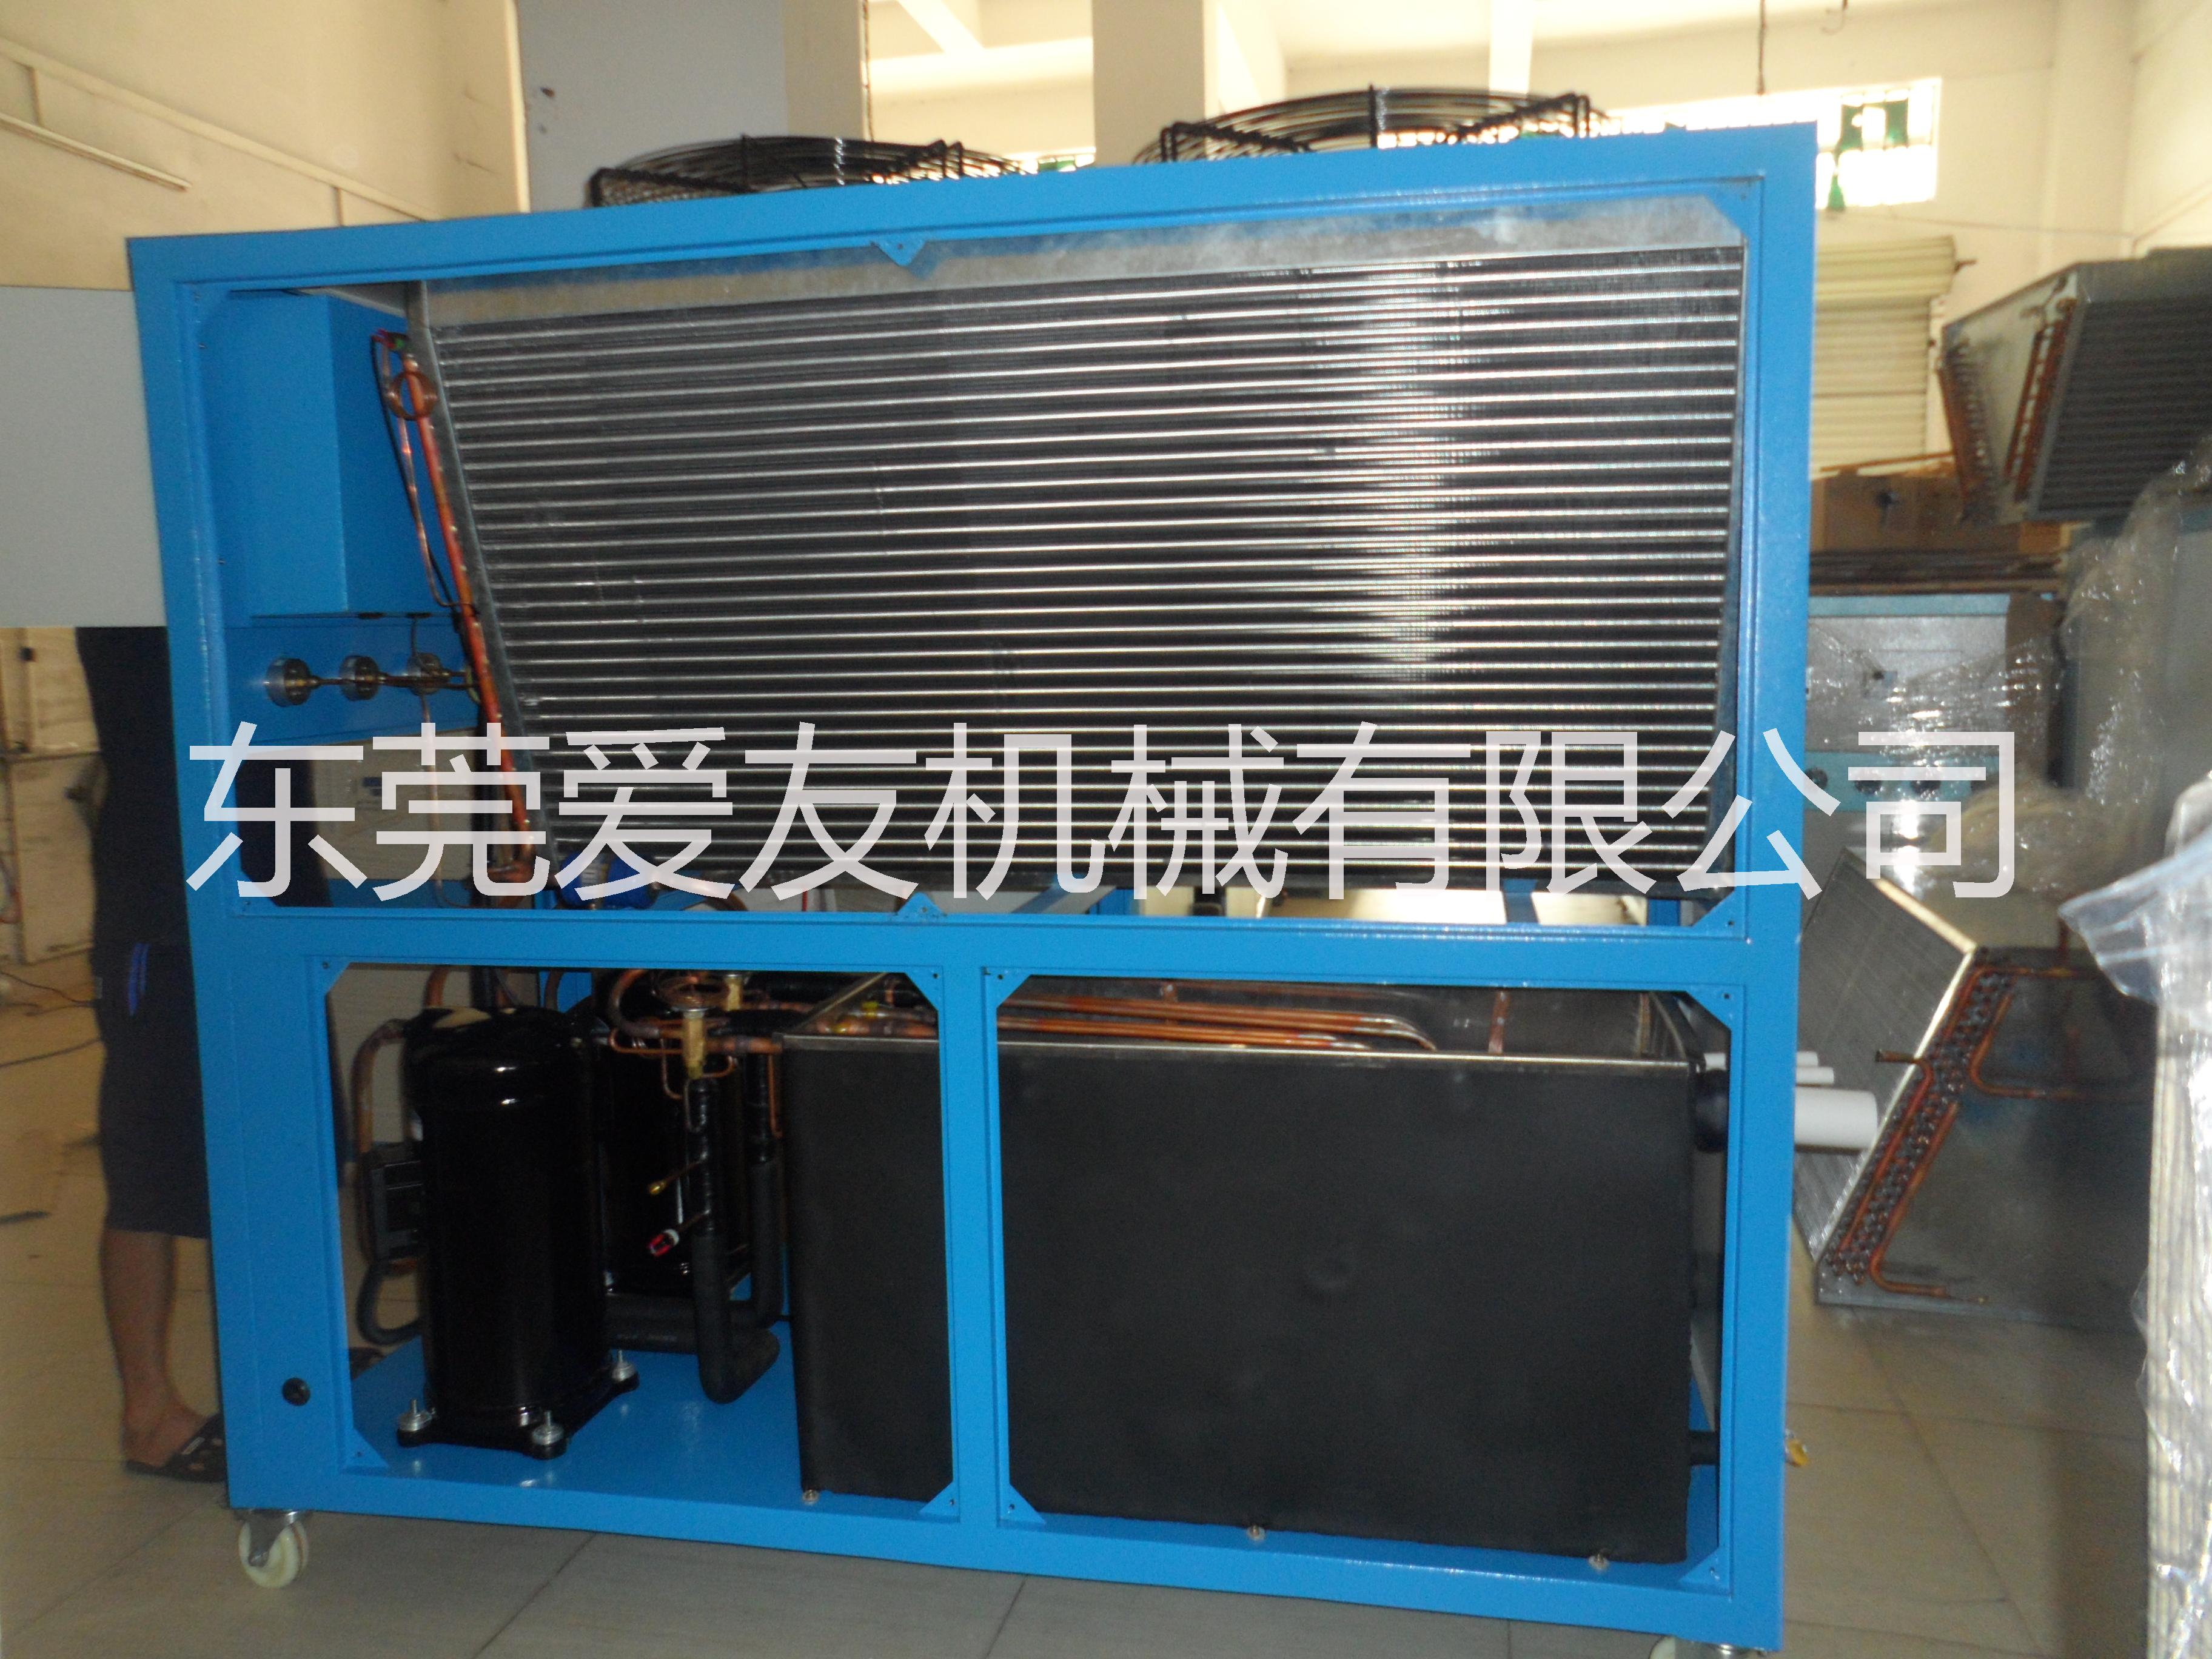 上海风冷式冷水机价格 上海风冷式冷水机批发报价图片